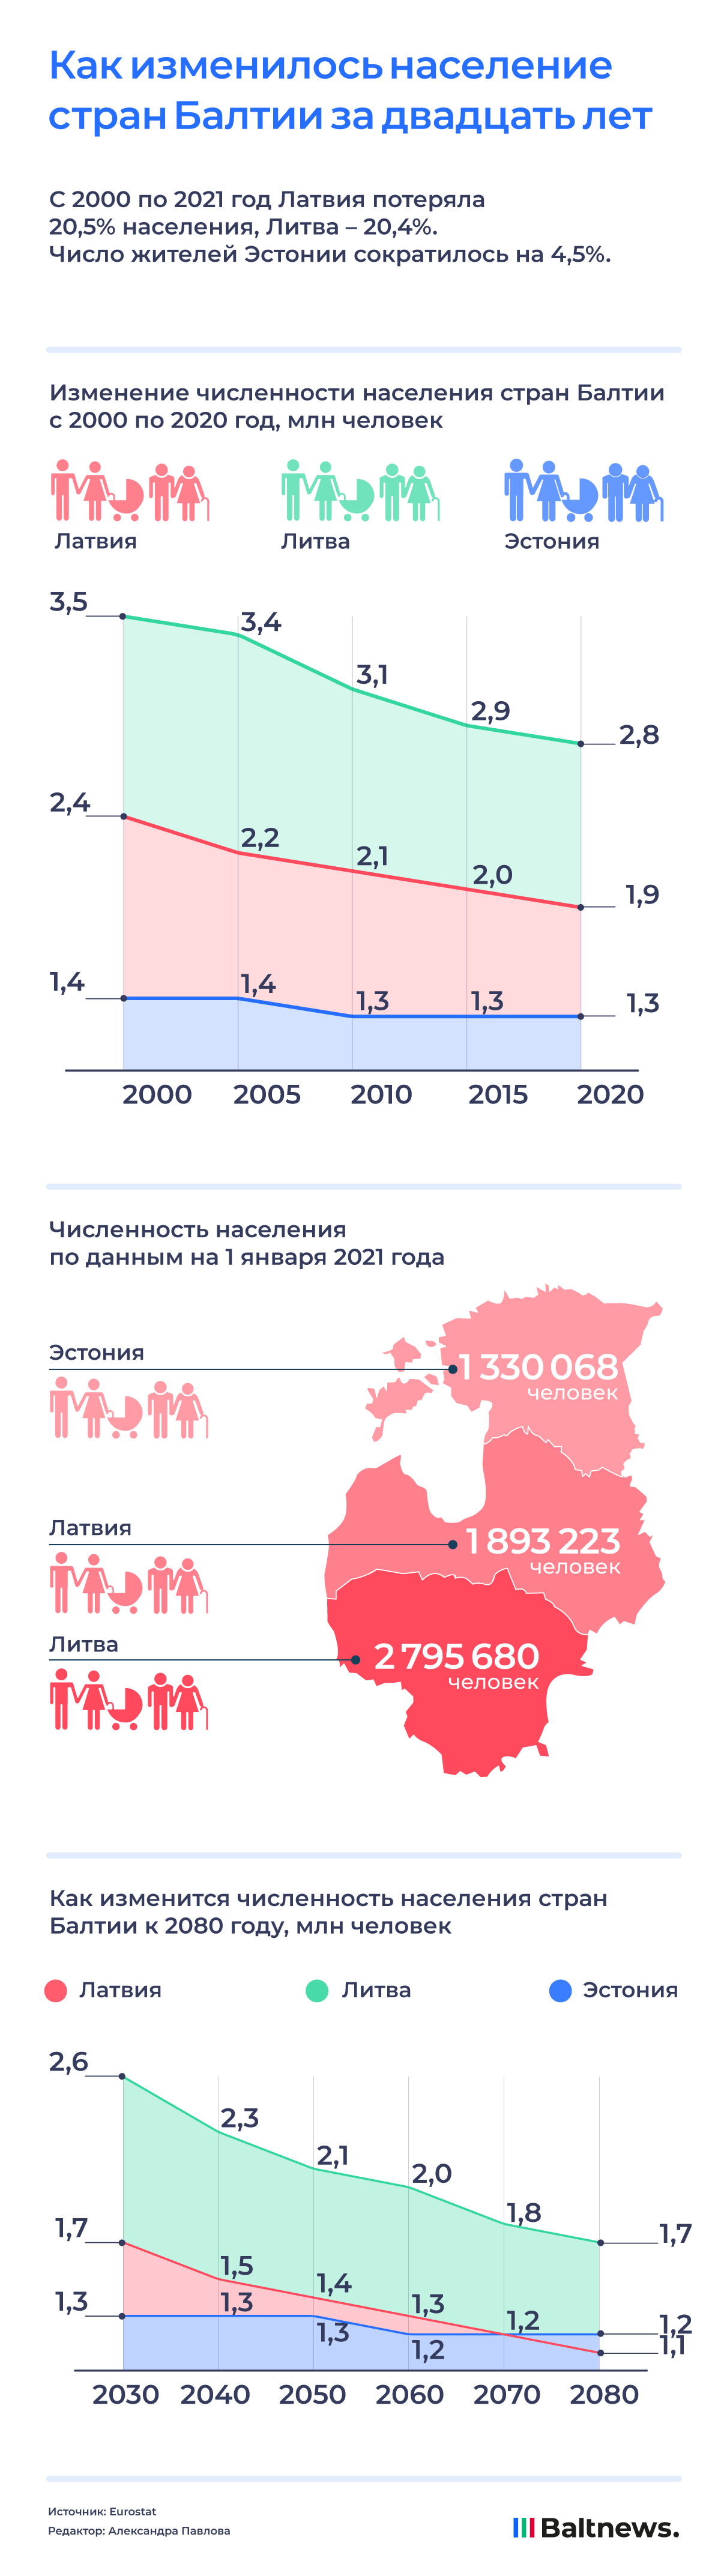 Население в странах Балтии